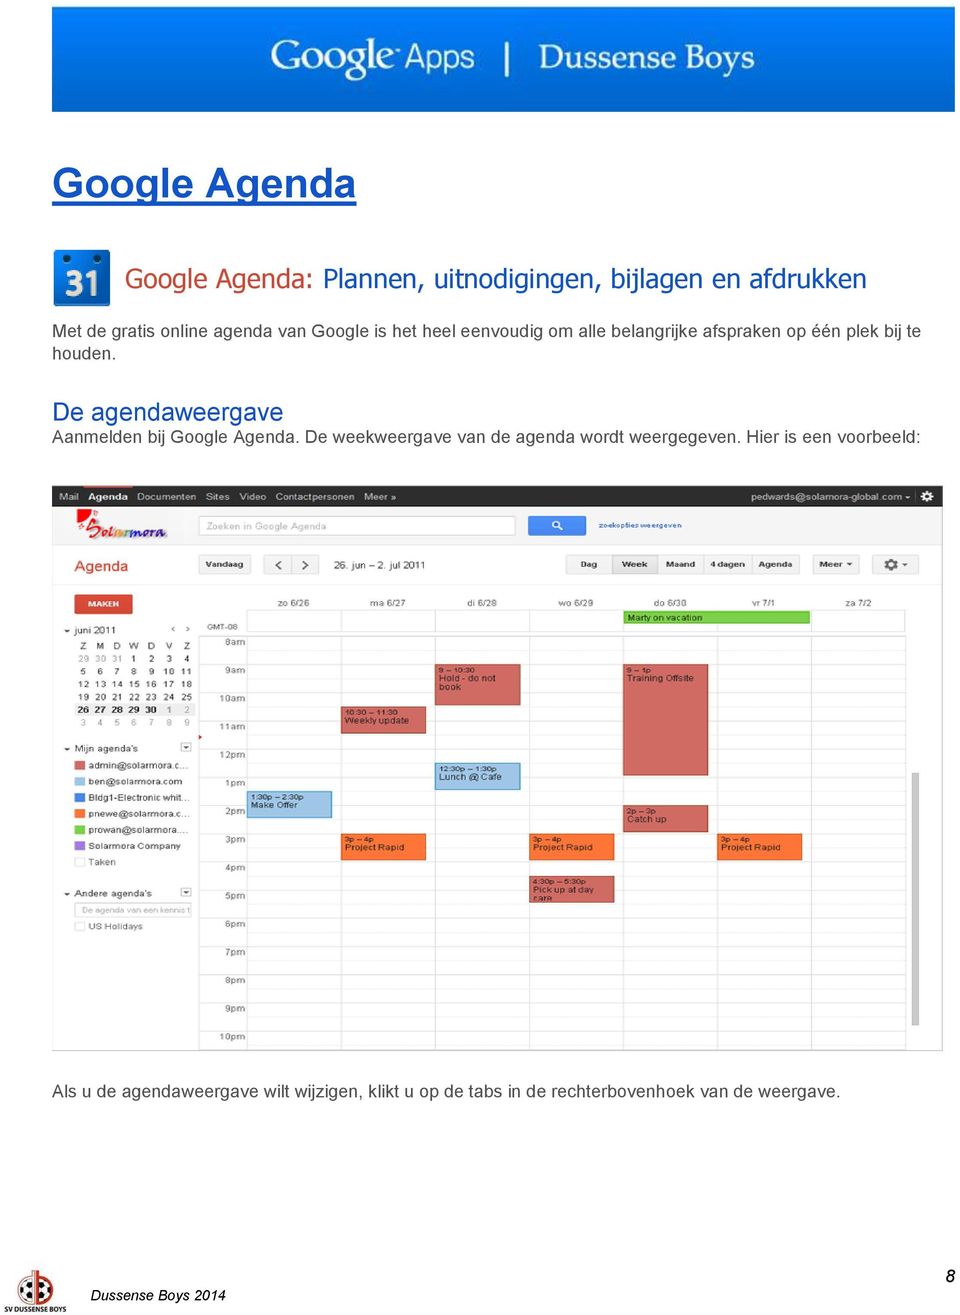 De agendaweergave Aanmelden bij Google Agenda. De weekweergave van de agenda wordt weergegeven.